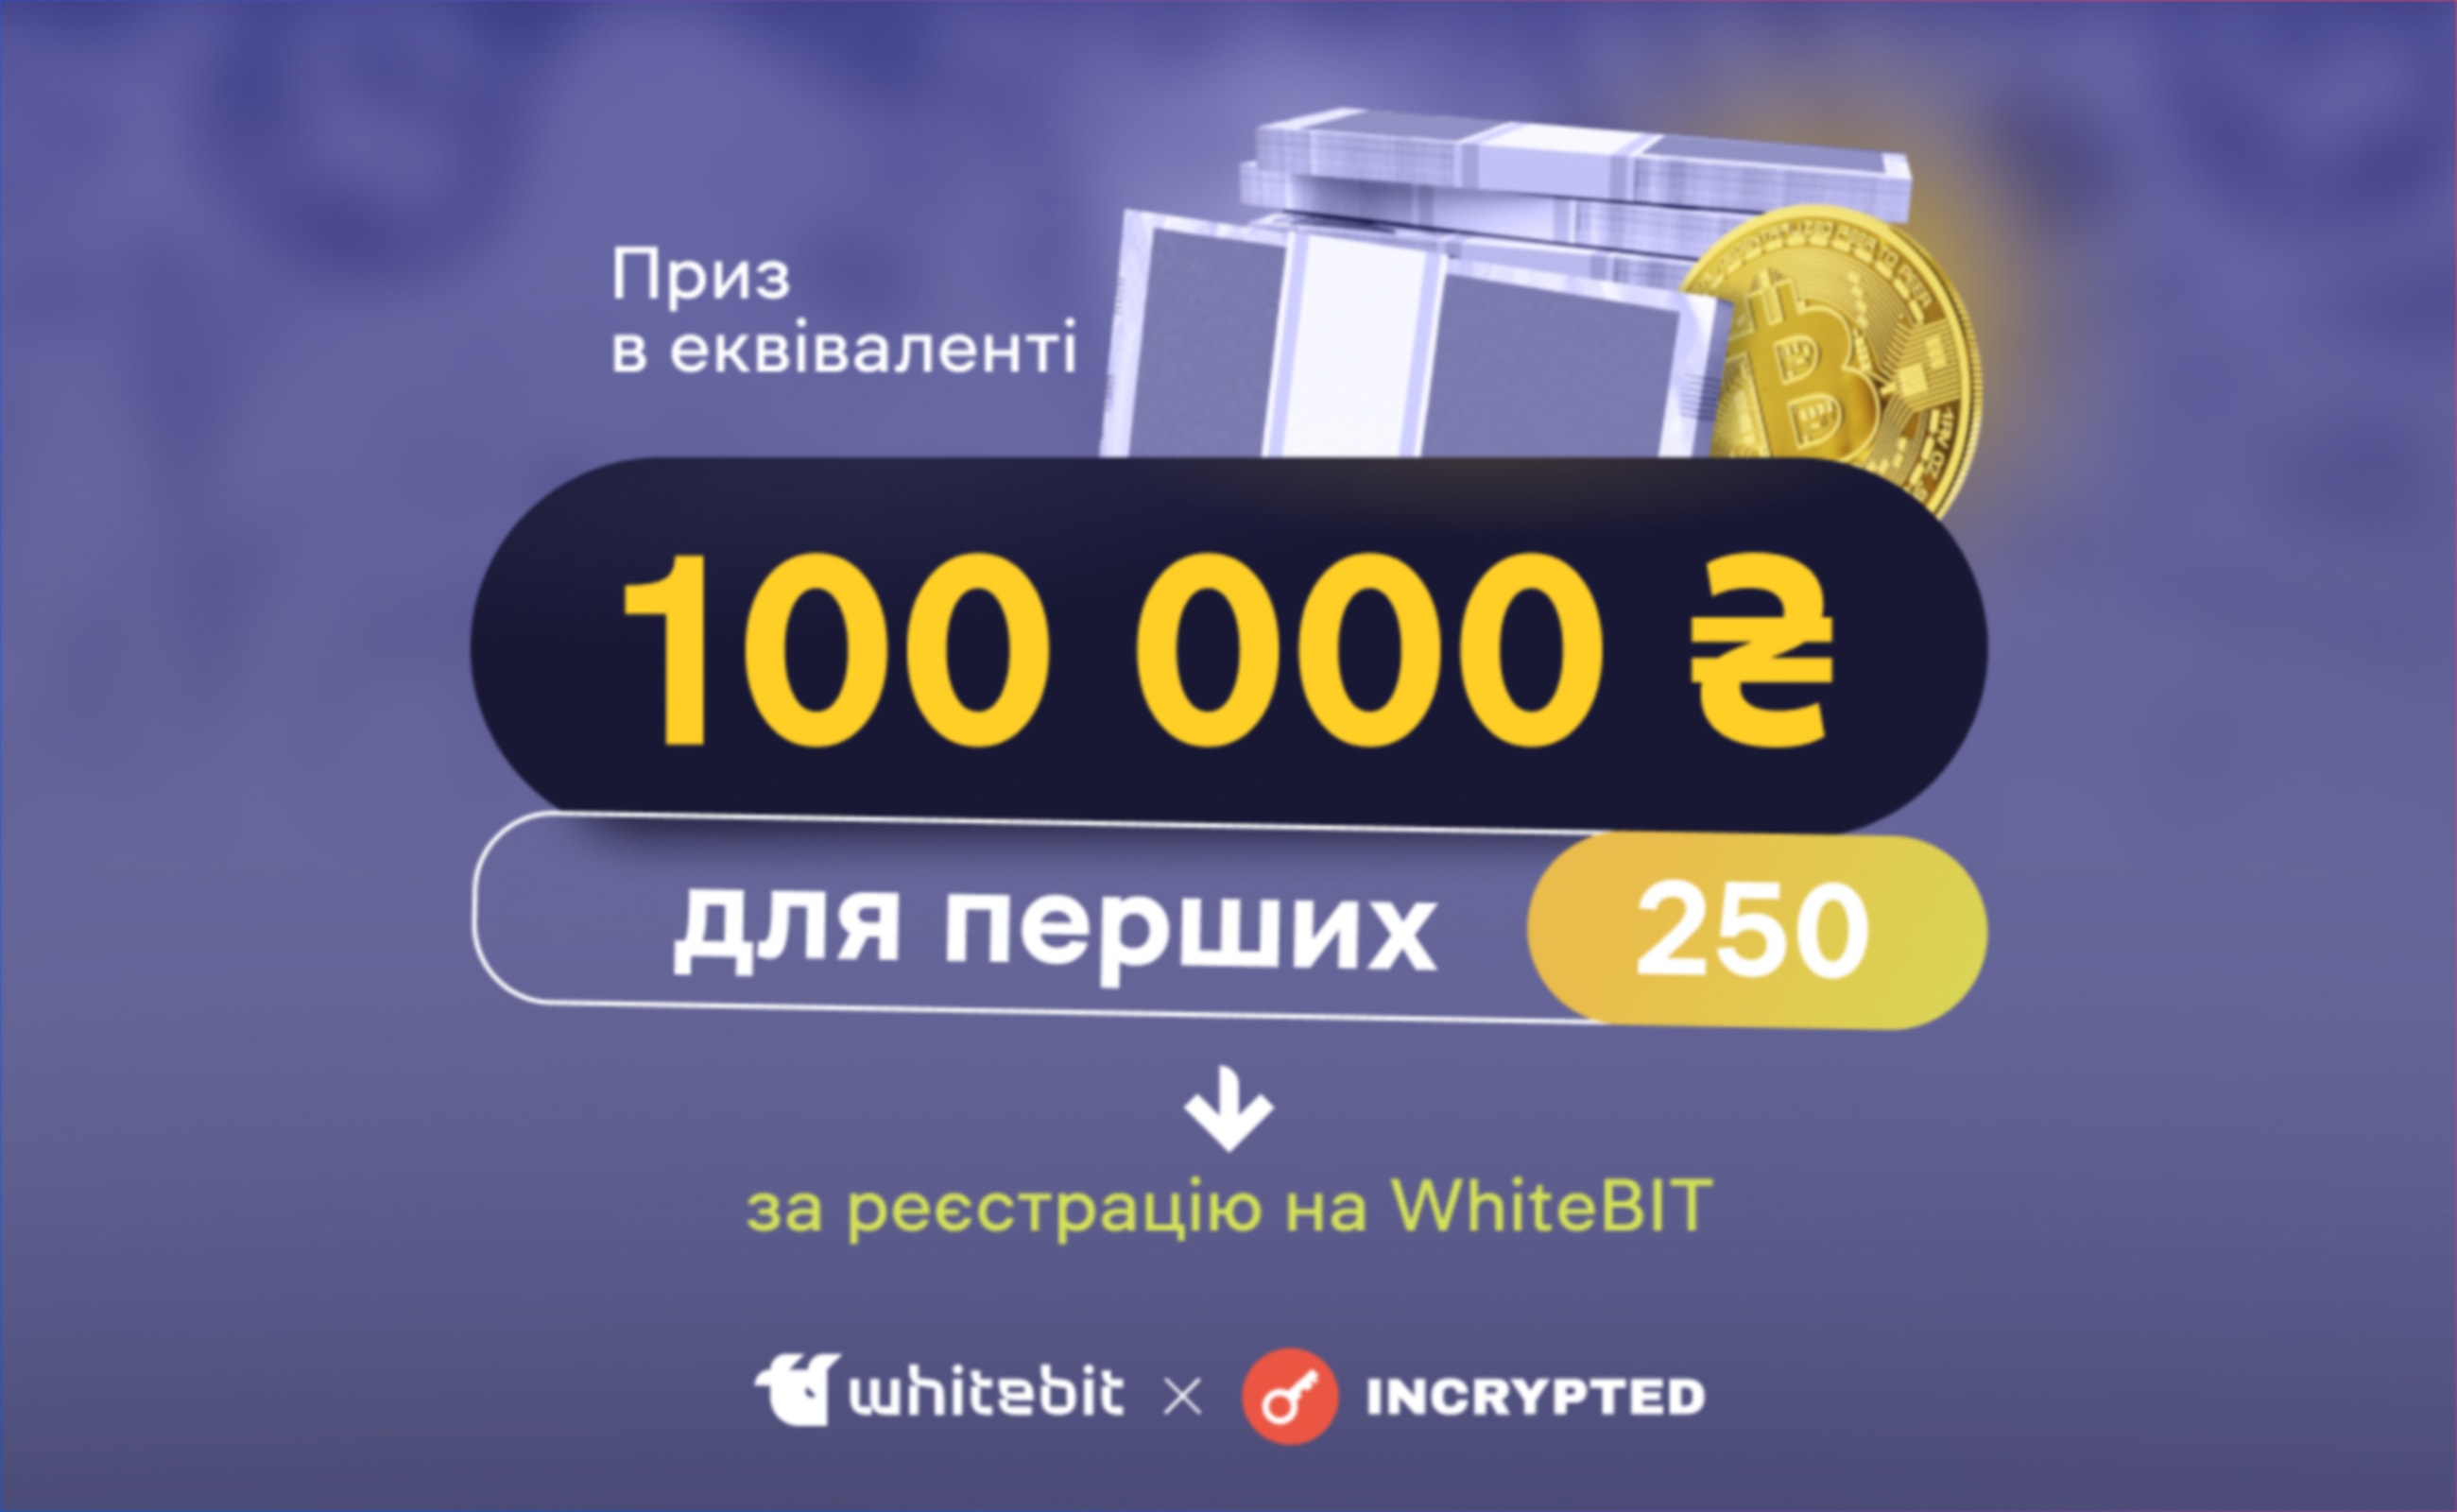 WhiteBIT та Incrypted розіграють приз у еквіваленті 100 000 гривень. Головний колаж статті.